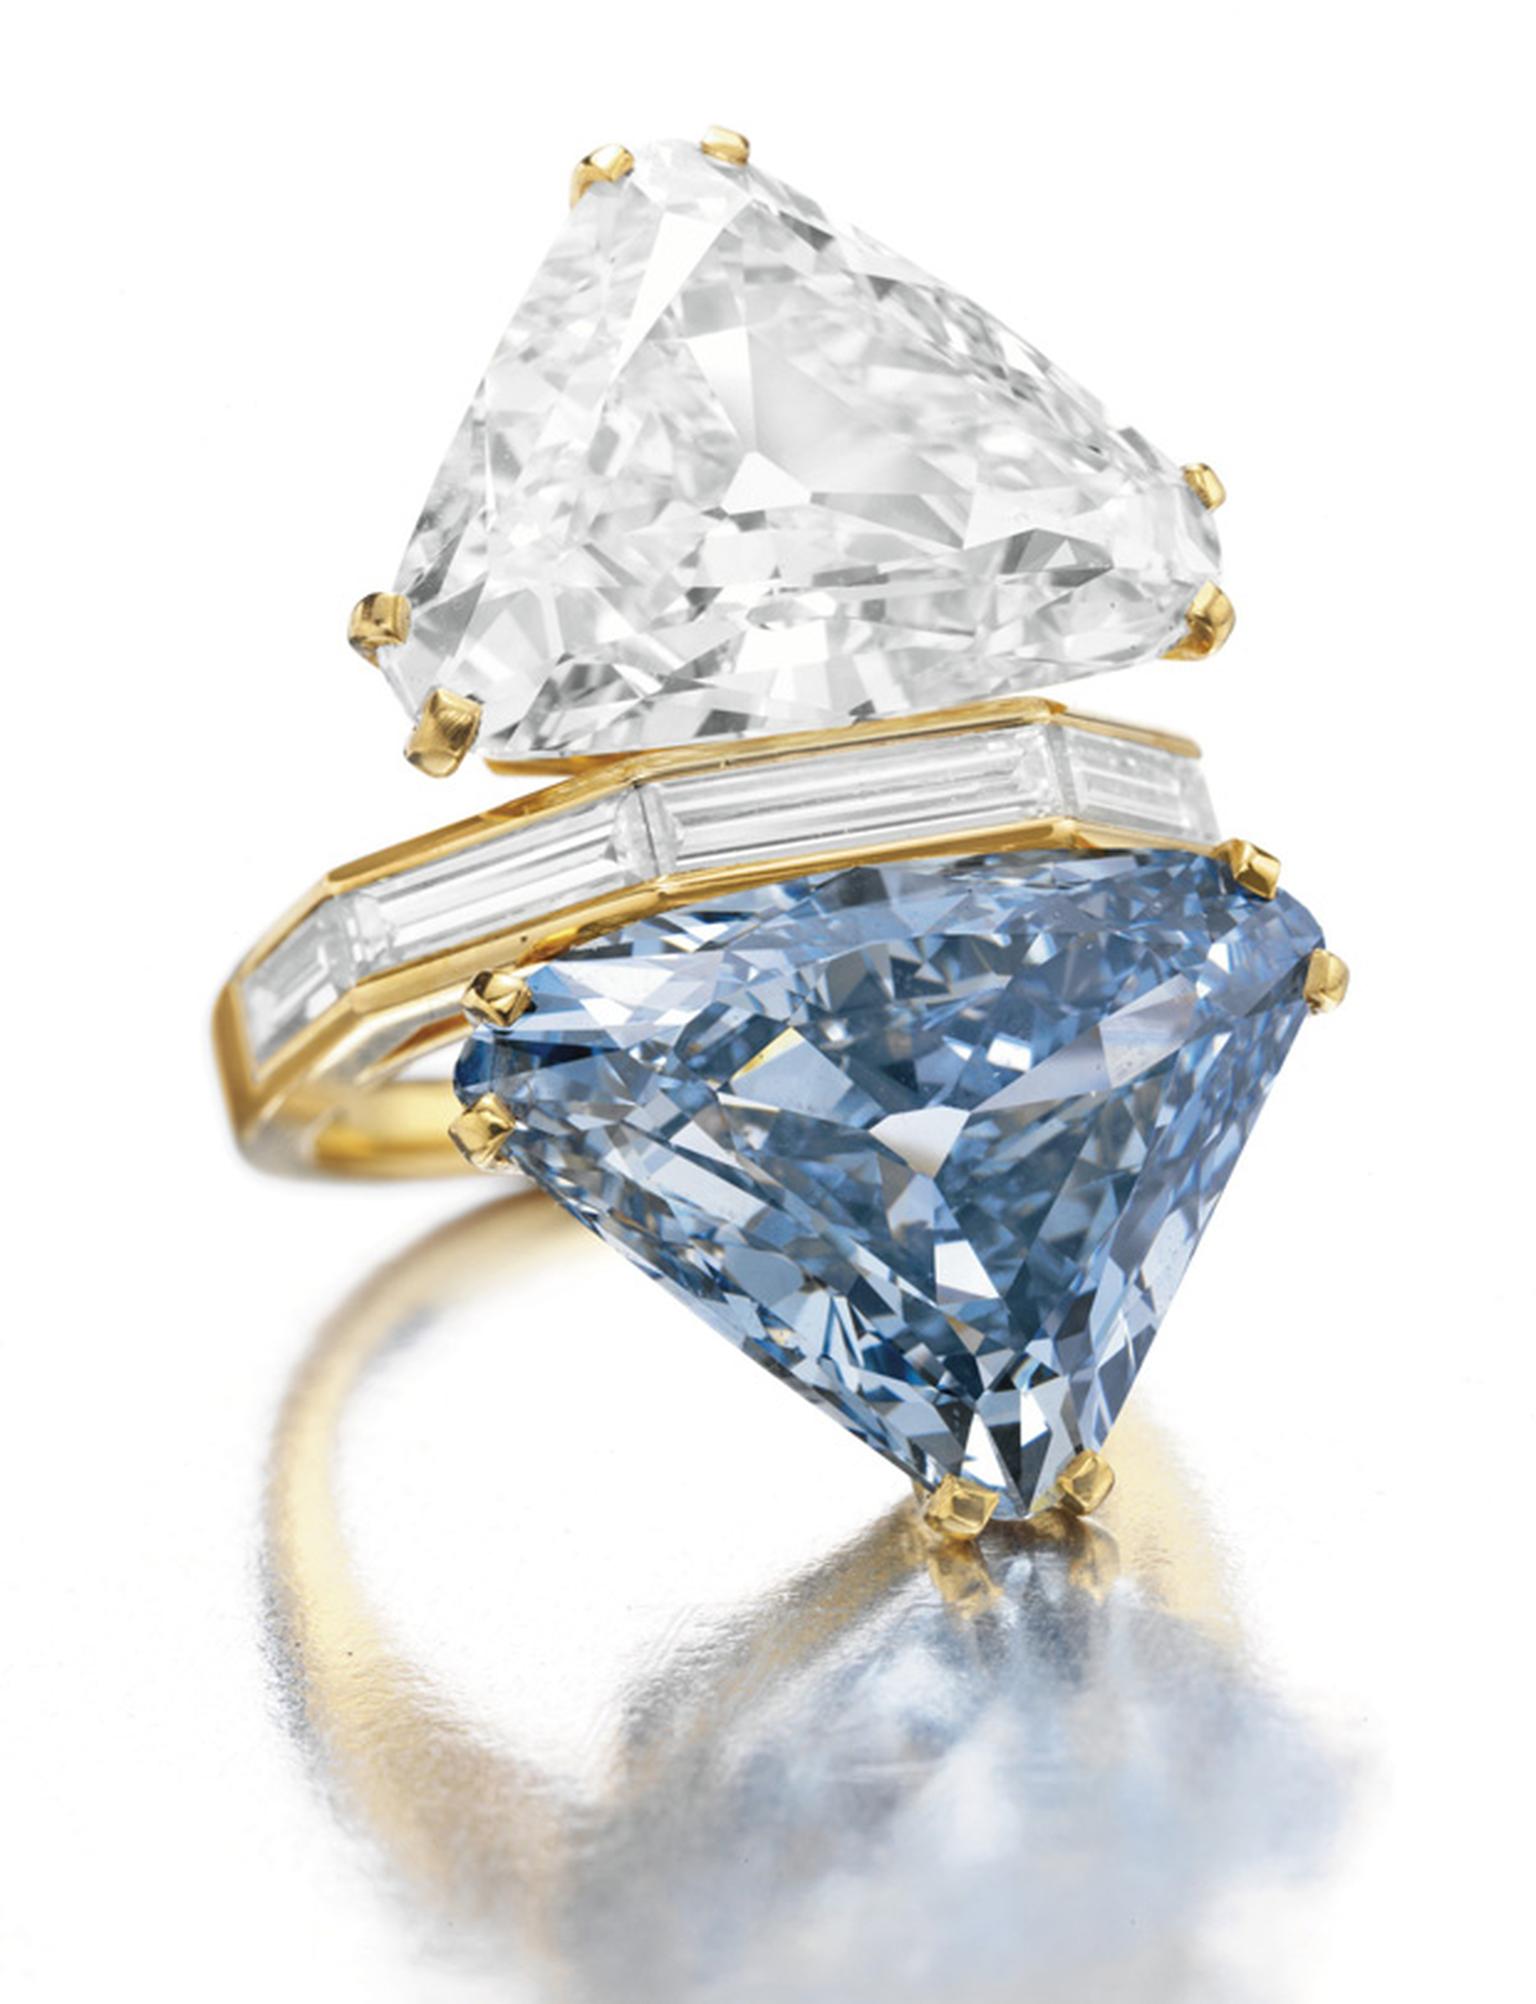 The Bulgari Blue diamond in its  1970-era setting